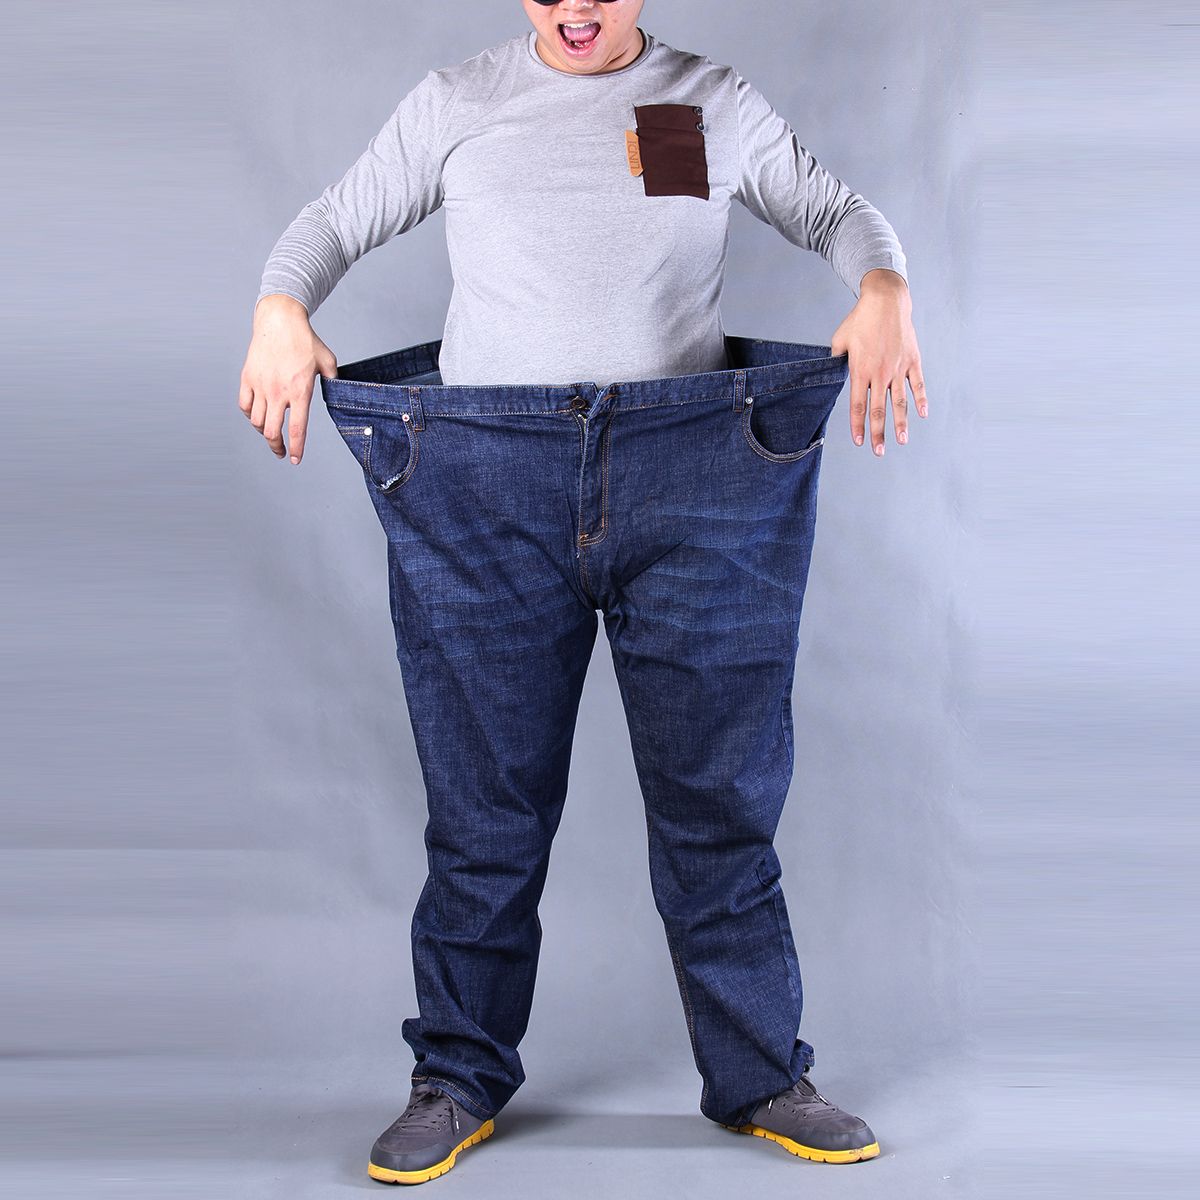 size 54 pants